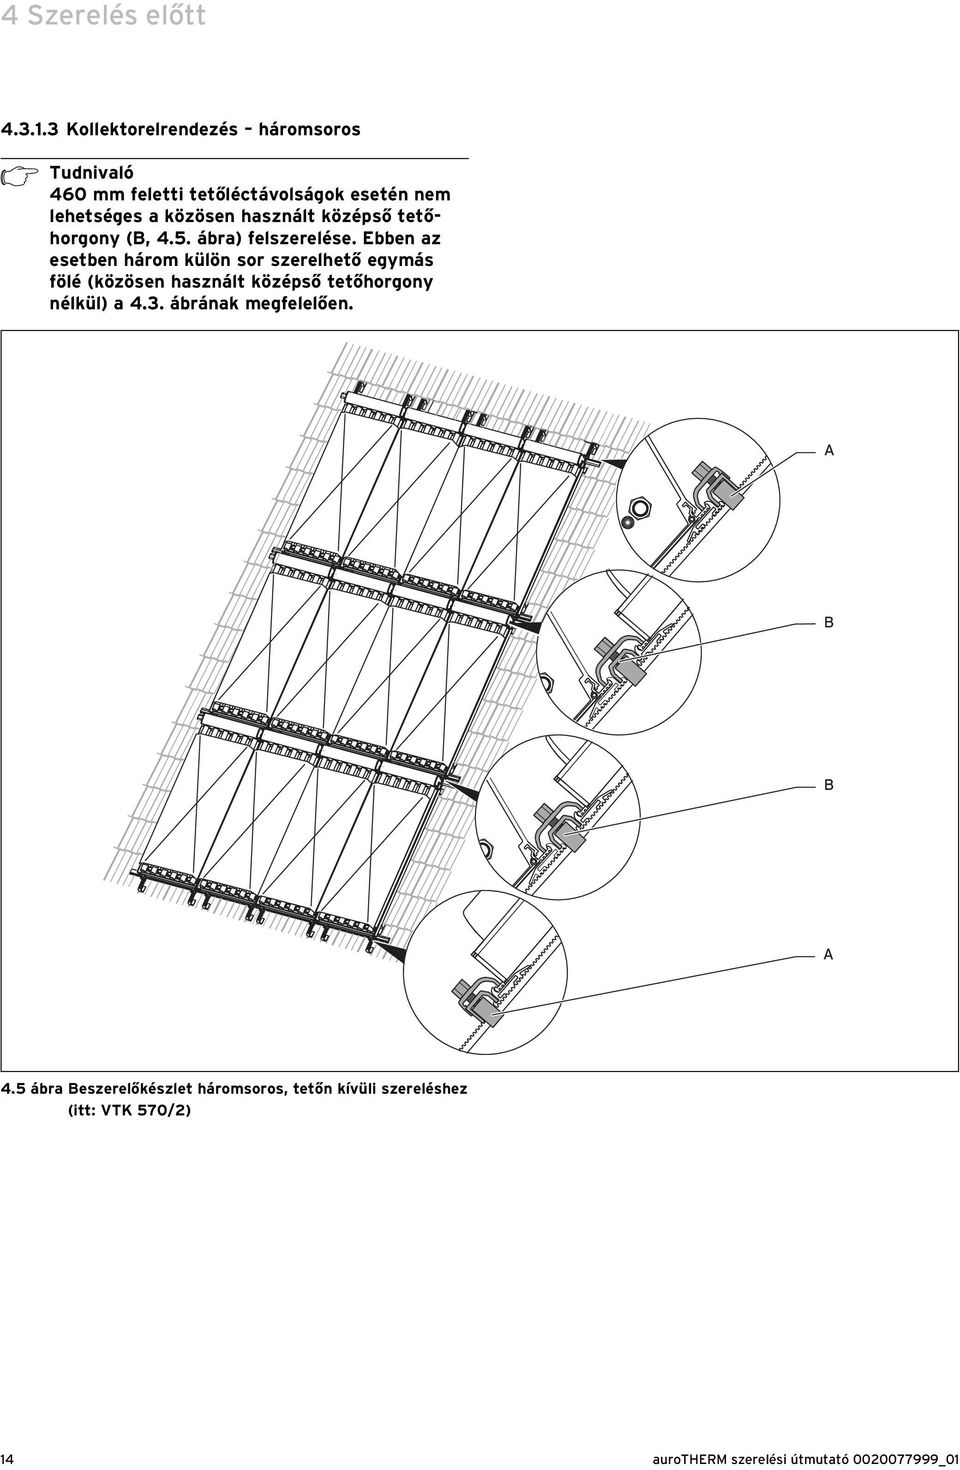 közösen használt középső tetőhorgony (B, 4.5. ábra) felszerelése.